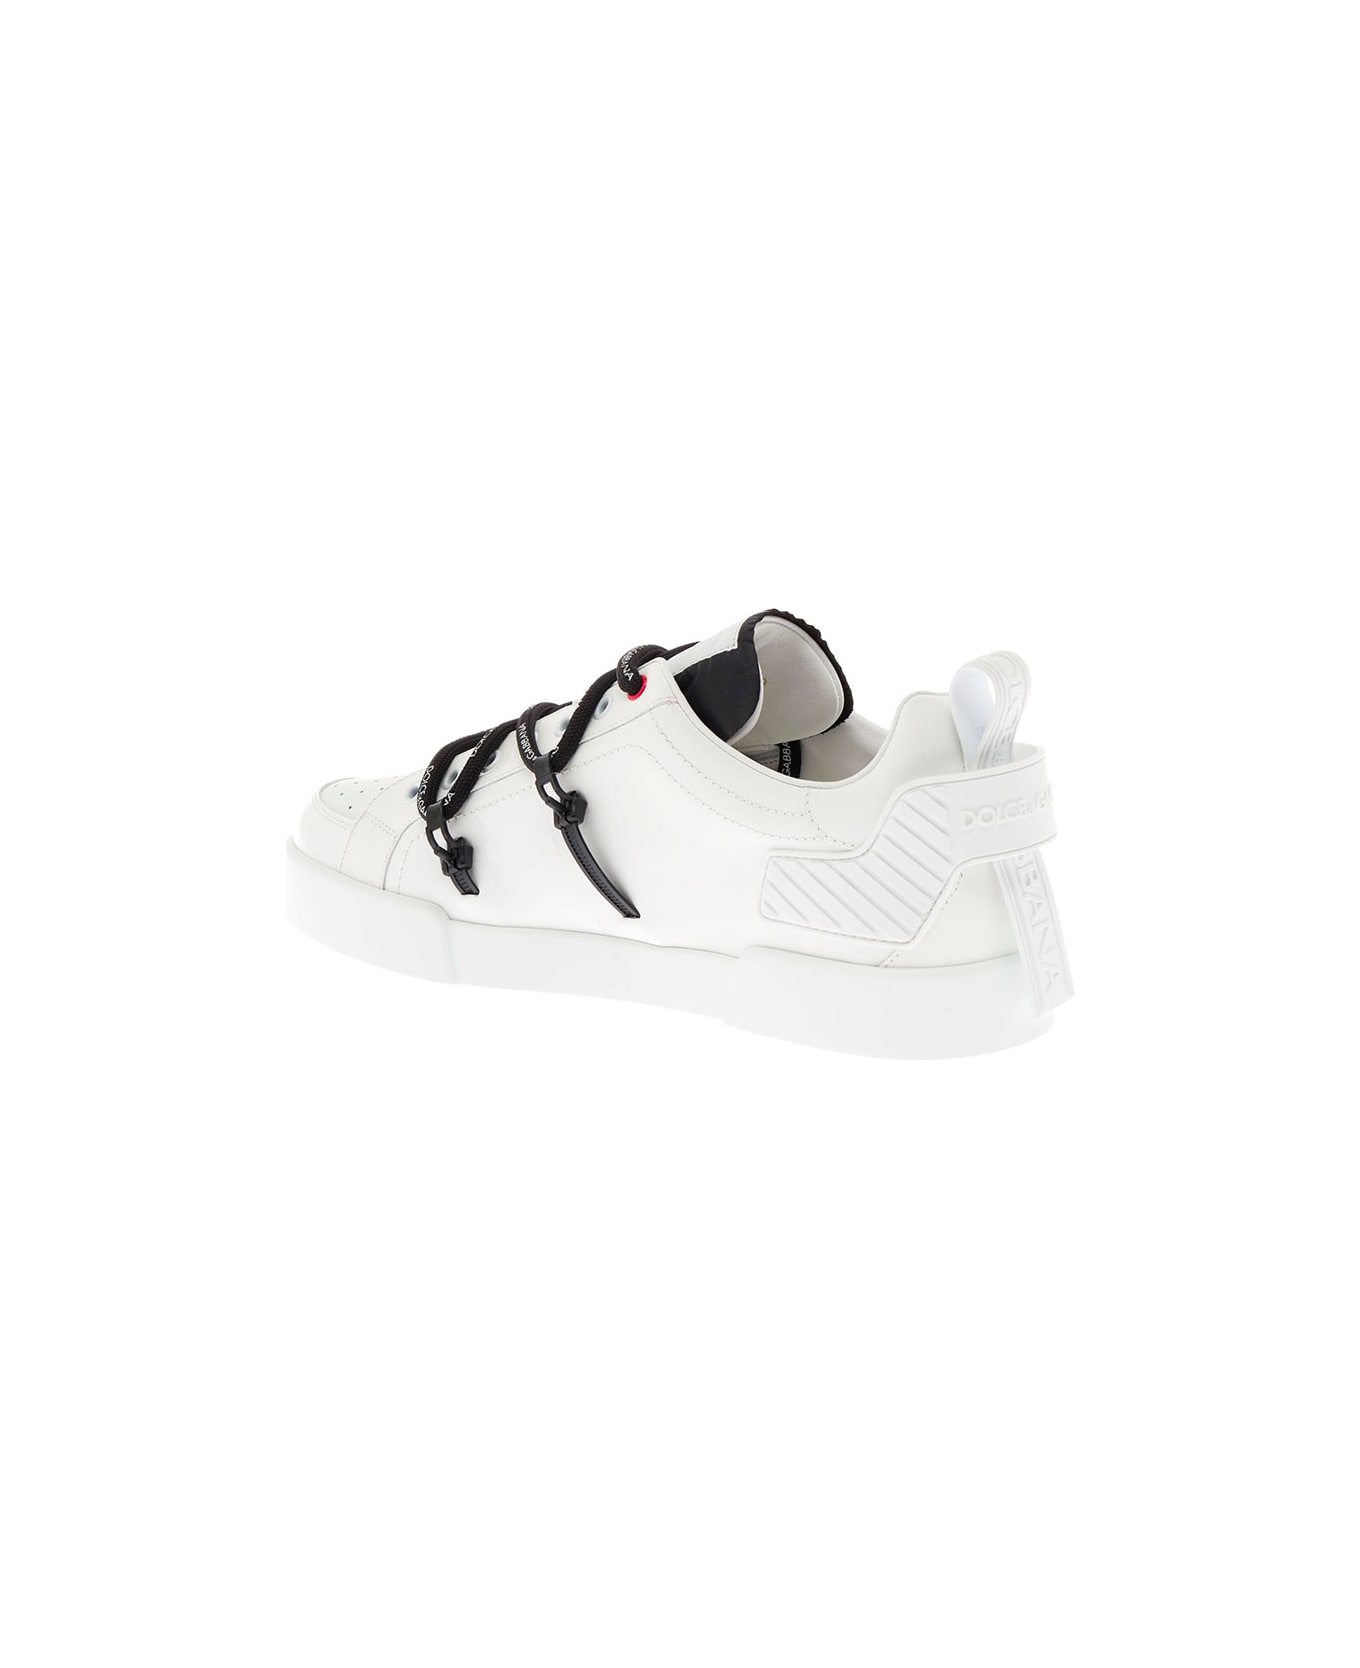 Dolce & Gabbana Man's Portofino White Leather And Patent Sneakers - White